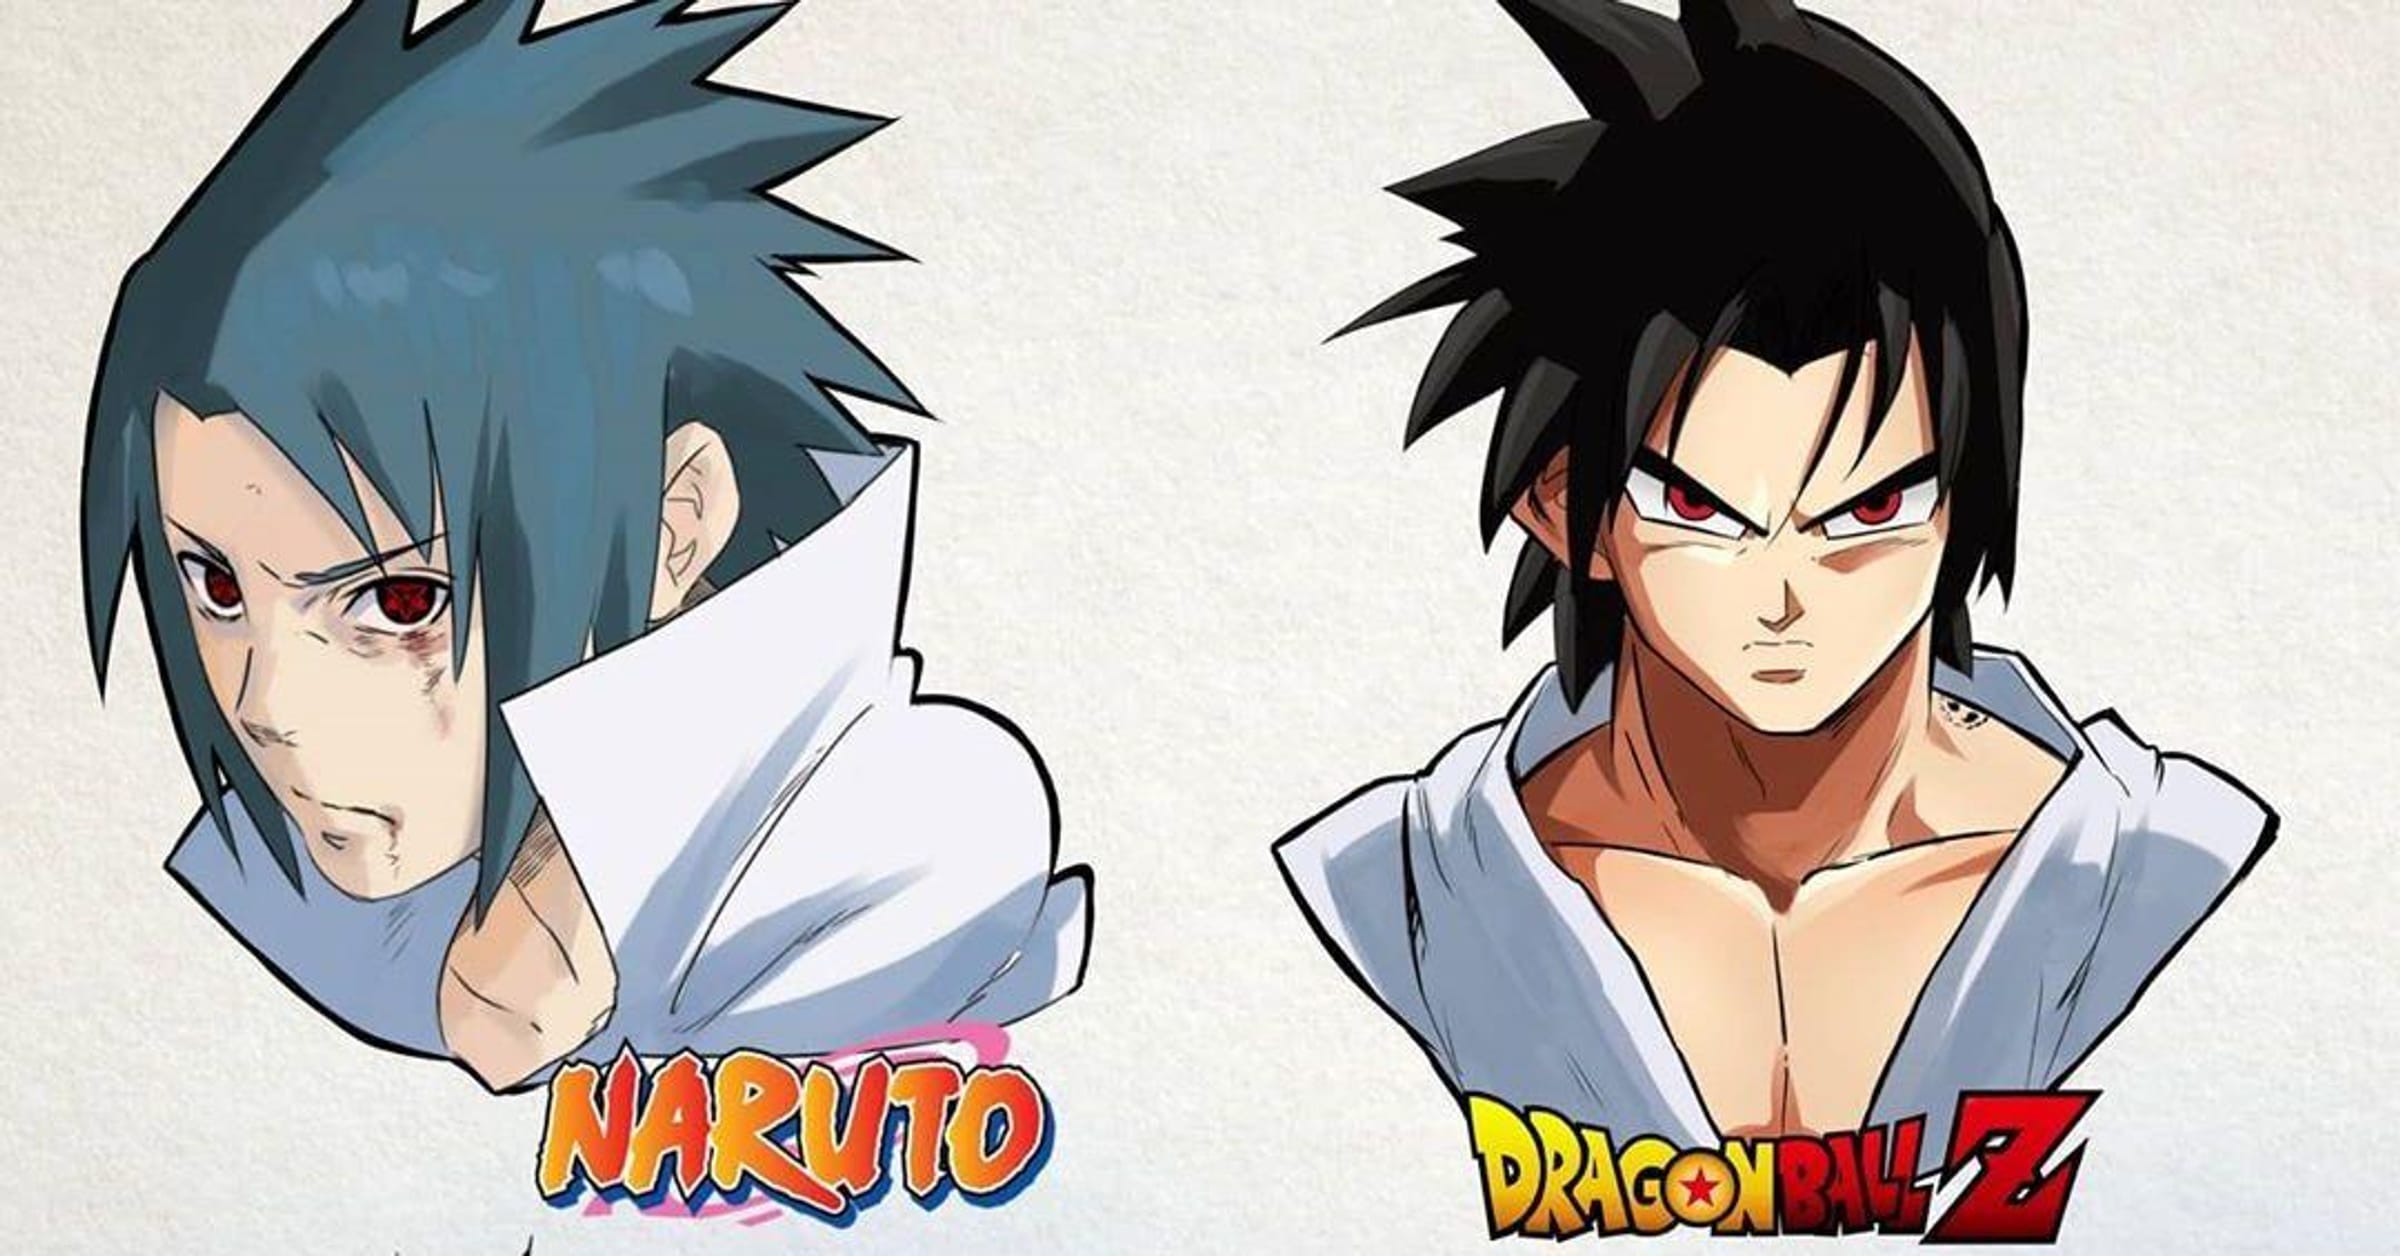 Naruto  Naruto sketch drawing, Anime character drawing, Naruto